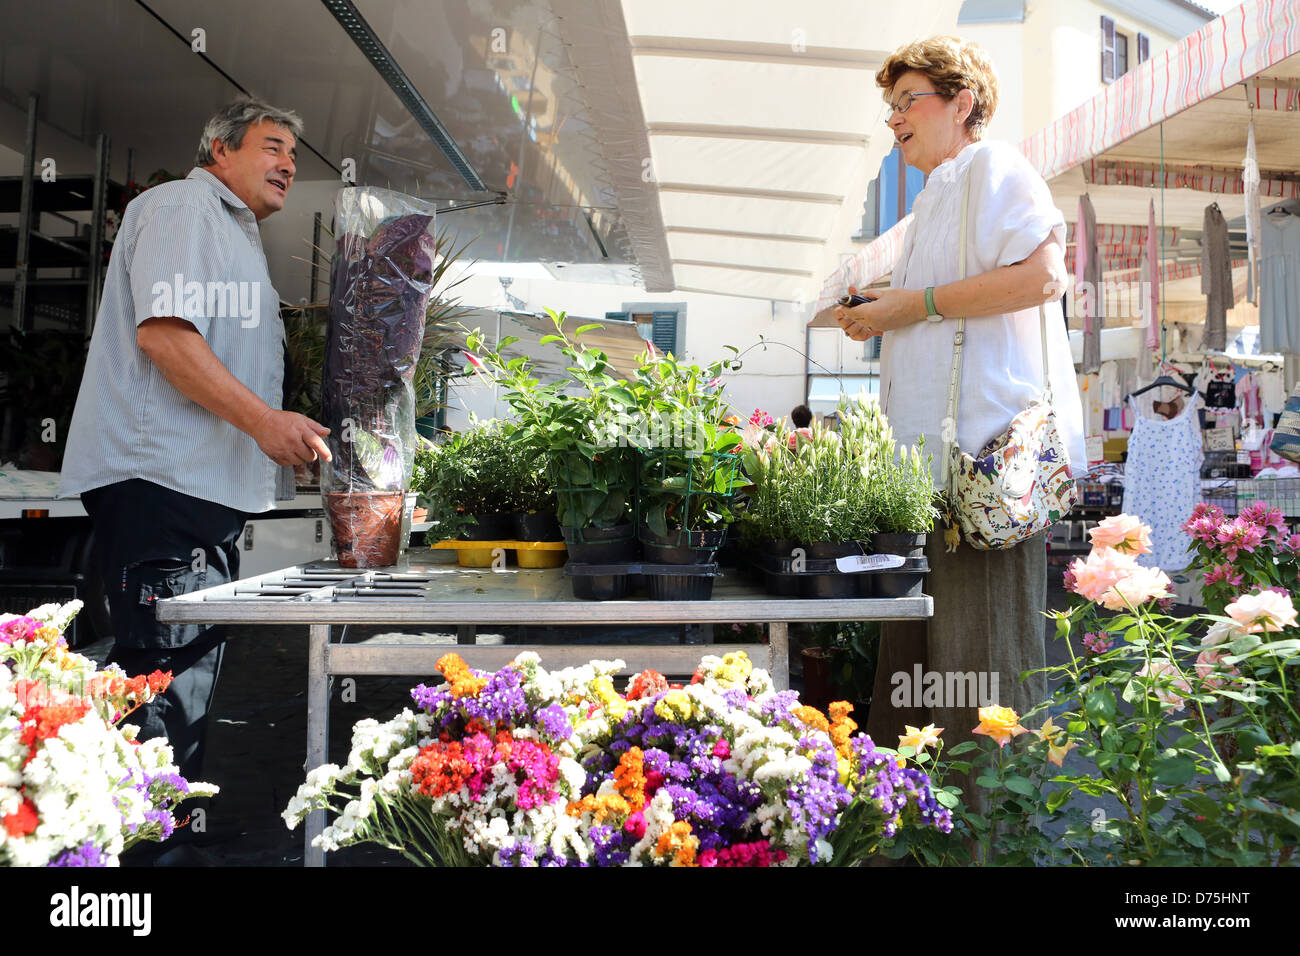 Aquapendente, Italien, kauft Frau auf einem Markt eine Pflanze Stockfoto